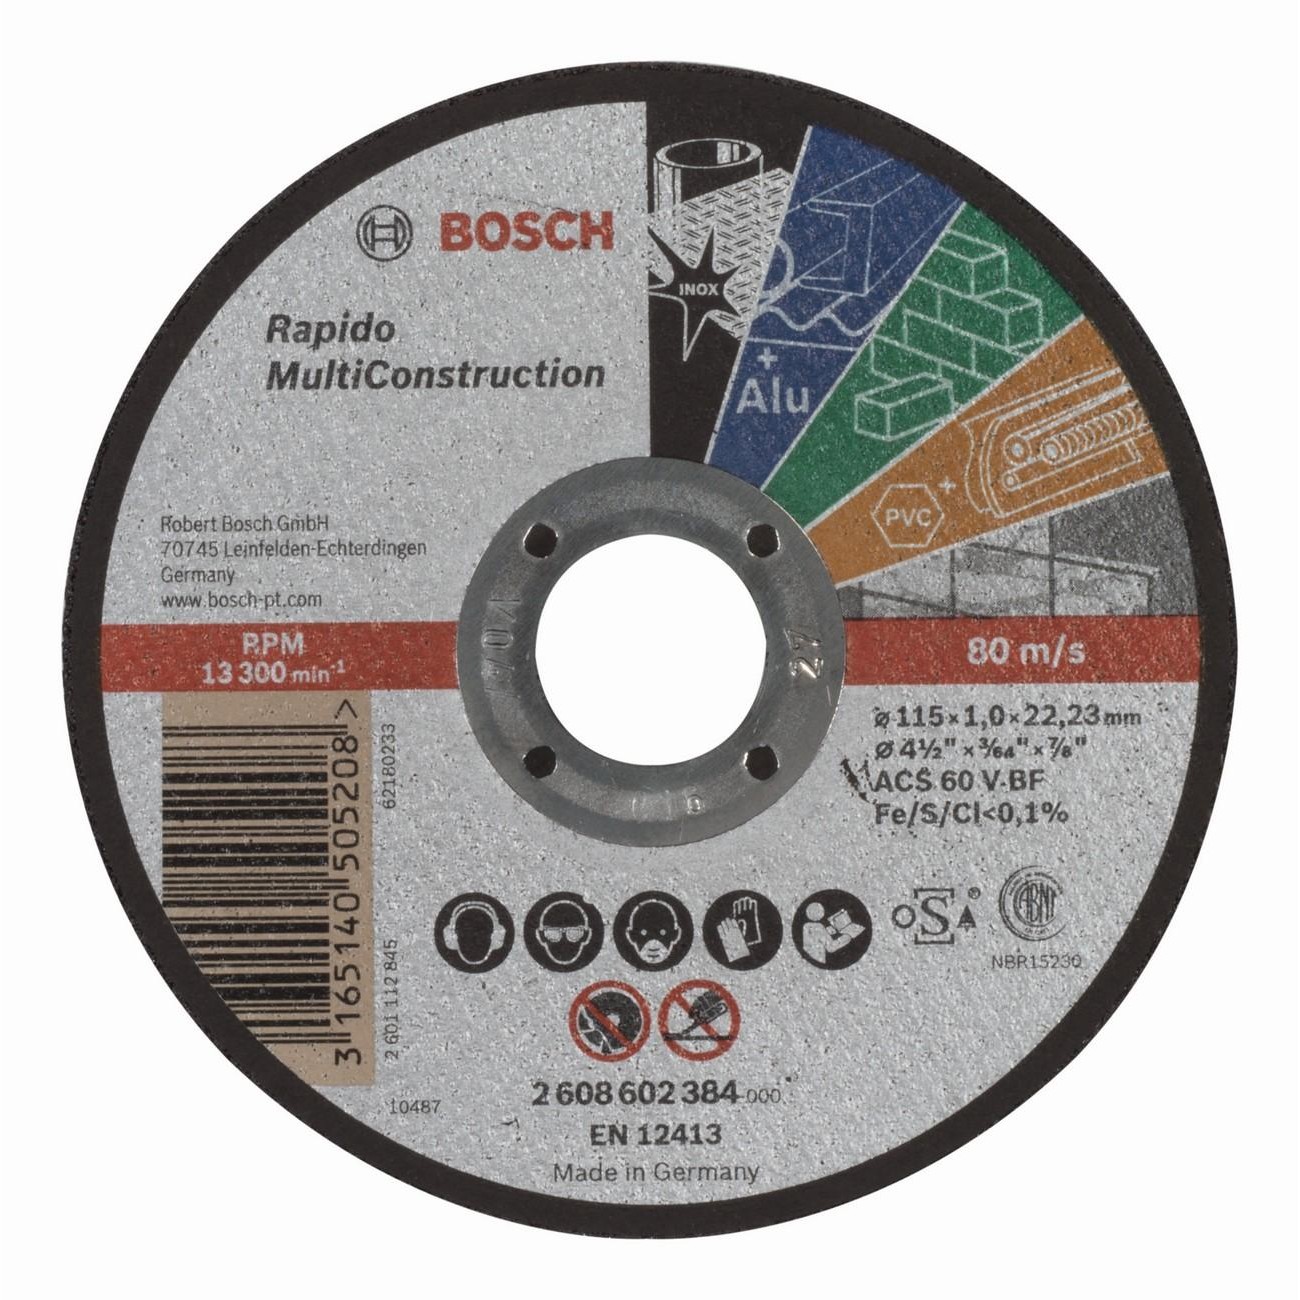 BOSCH Professional Rapido ACS 60 V BF Диск за рязане на метал 115 мм 1 мм (2608602384)